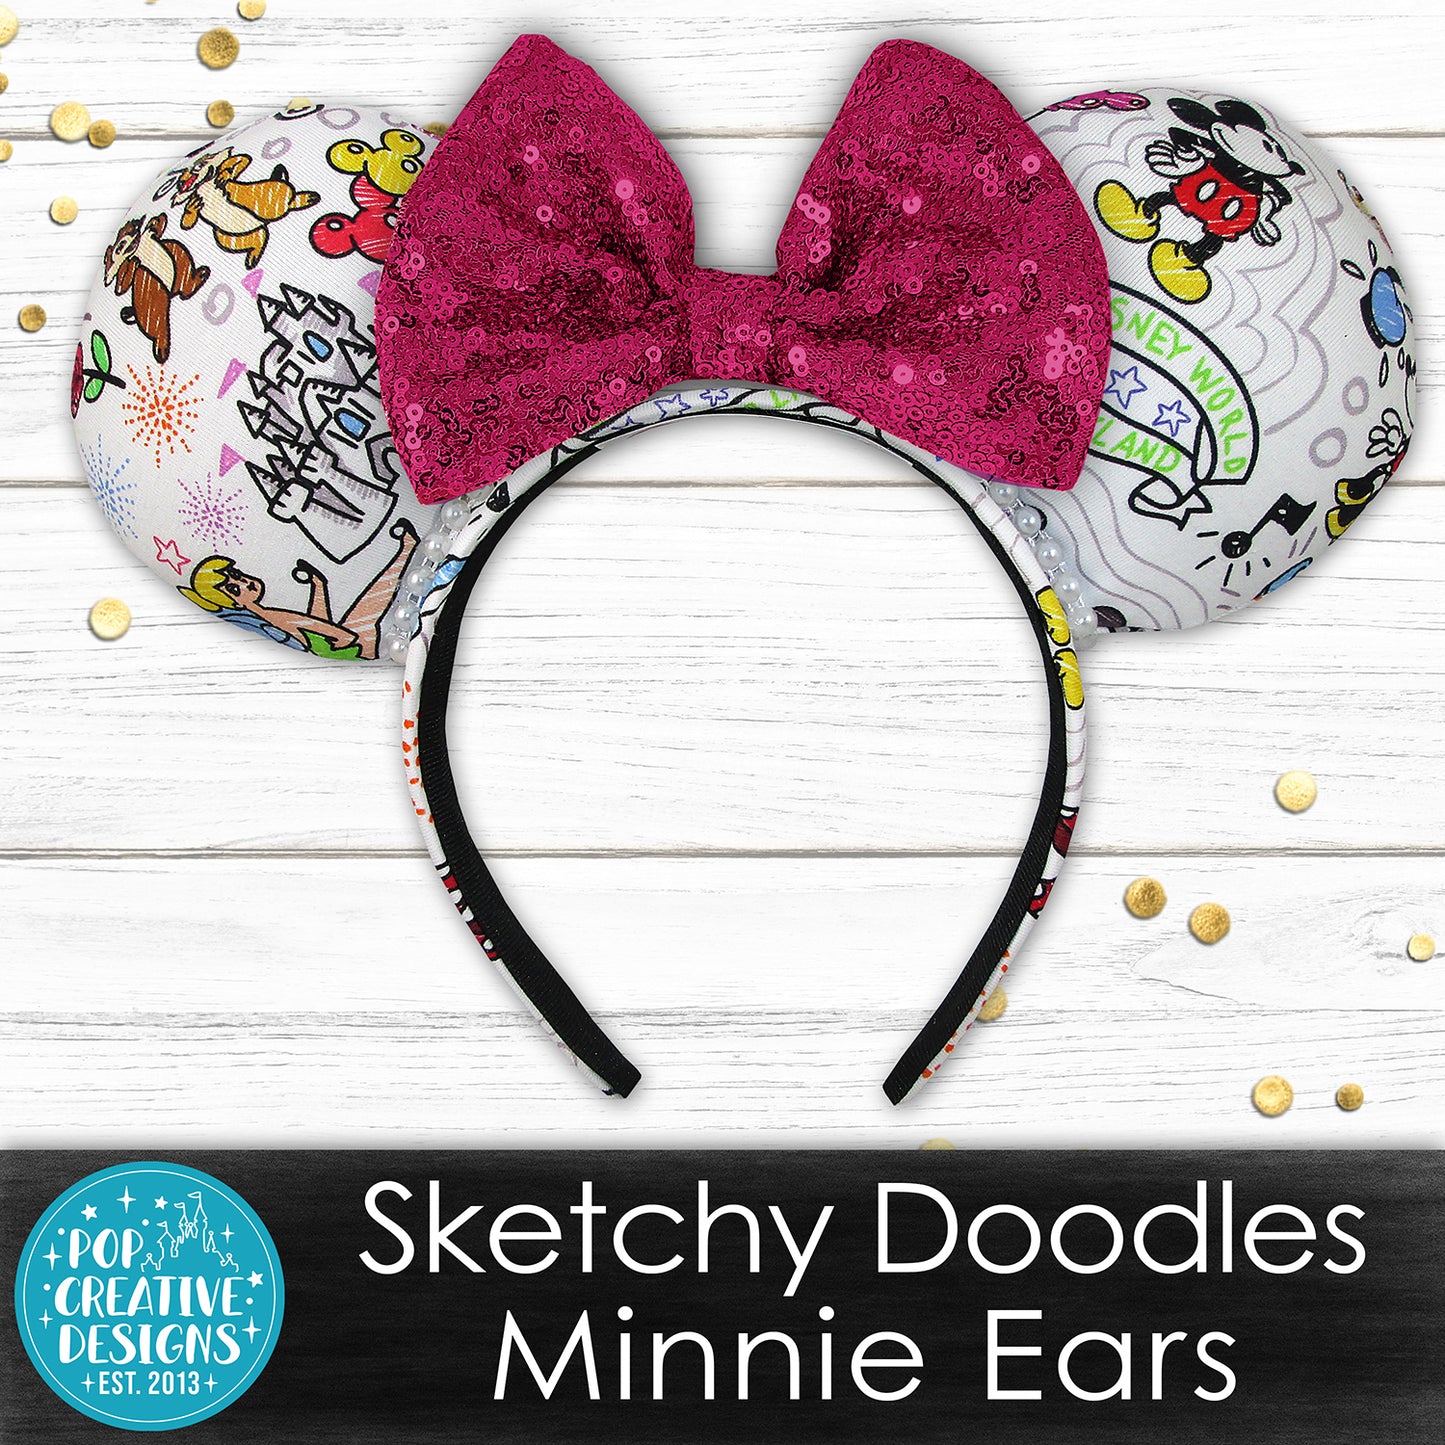 Sketchy Doodles Minnie Ears